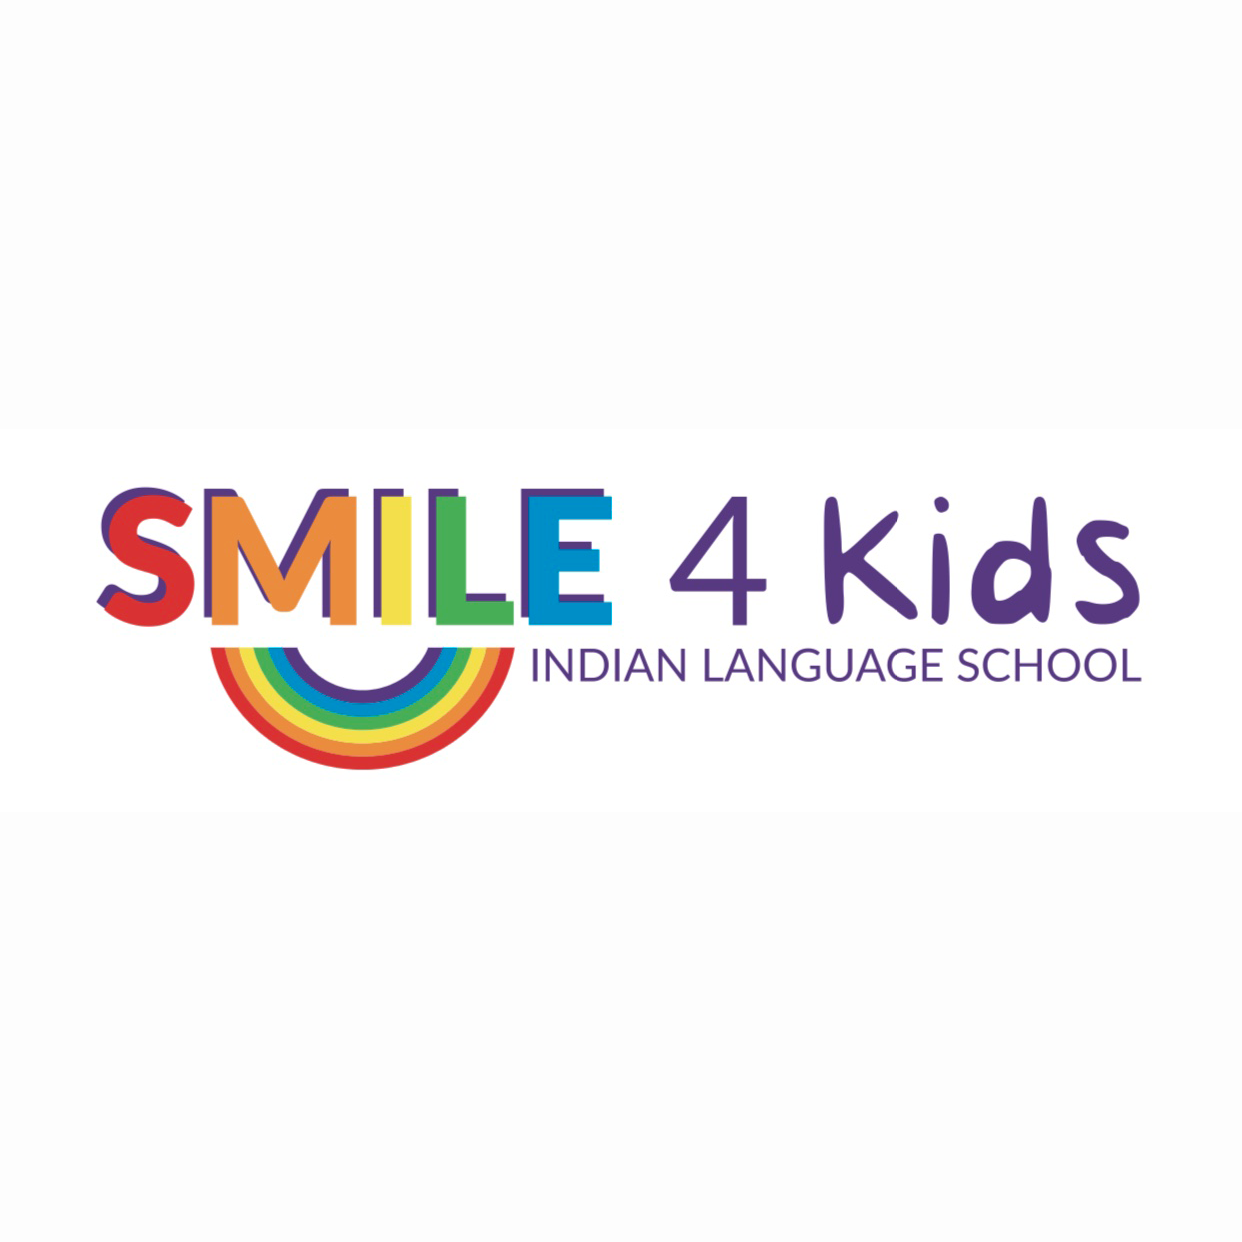 SMILE 4 Kids Indian Language School